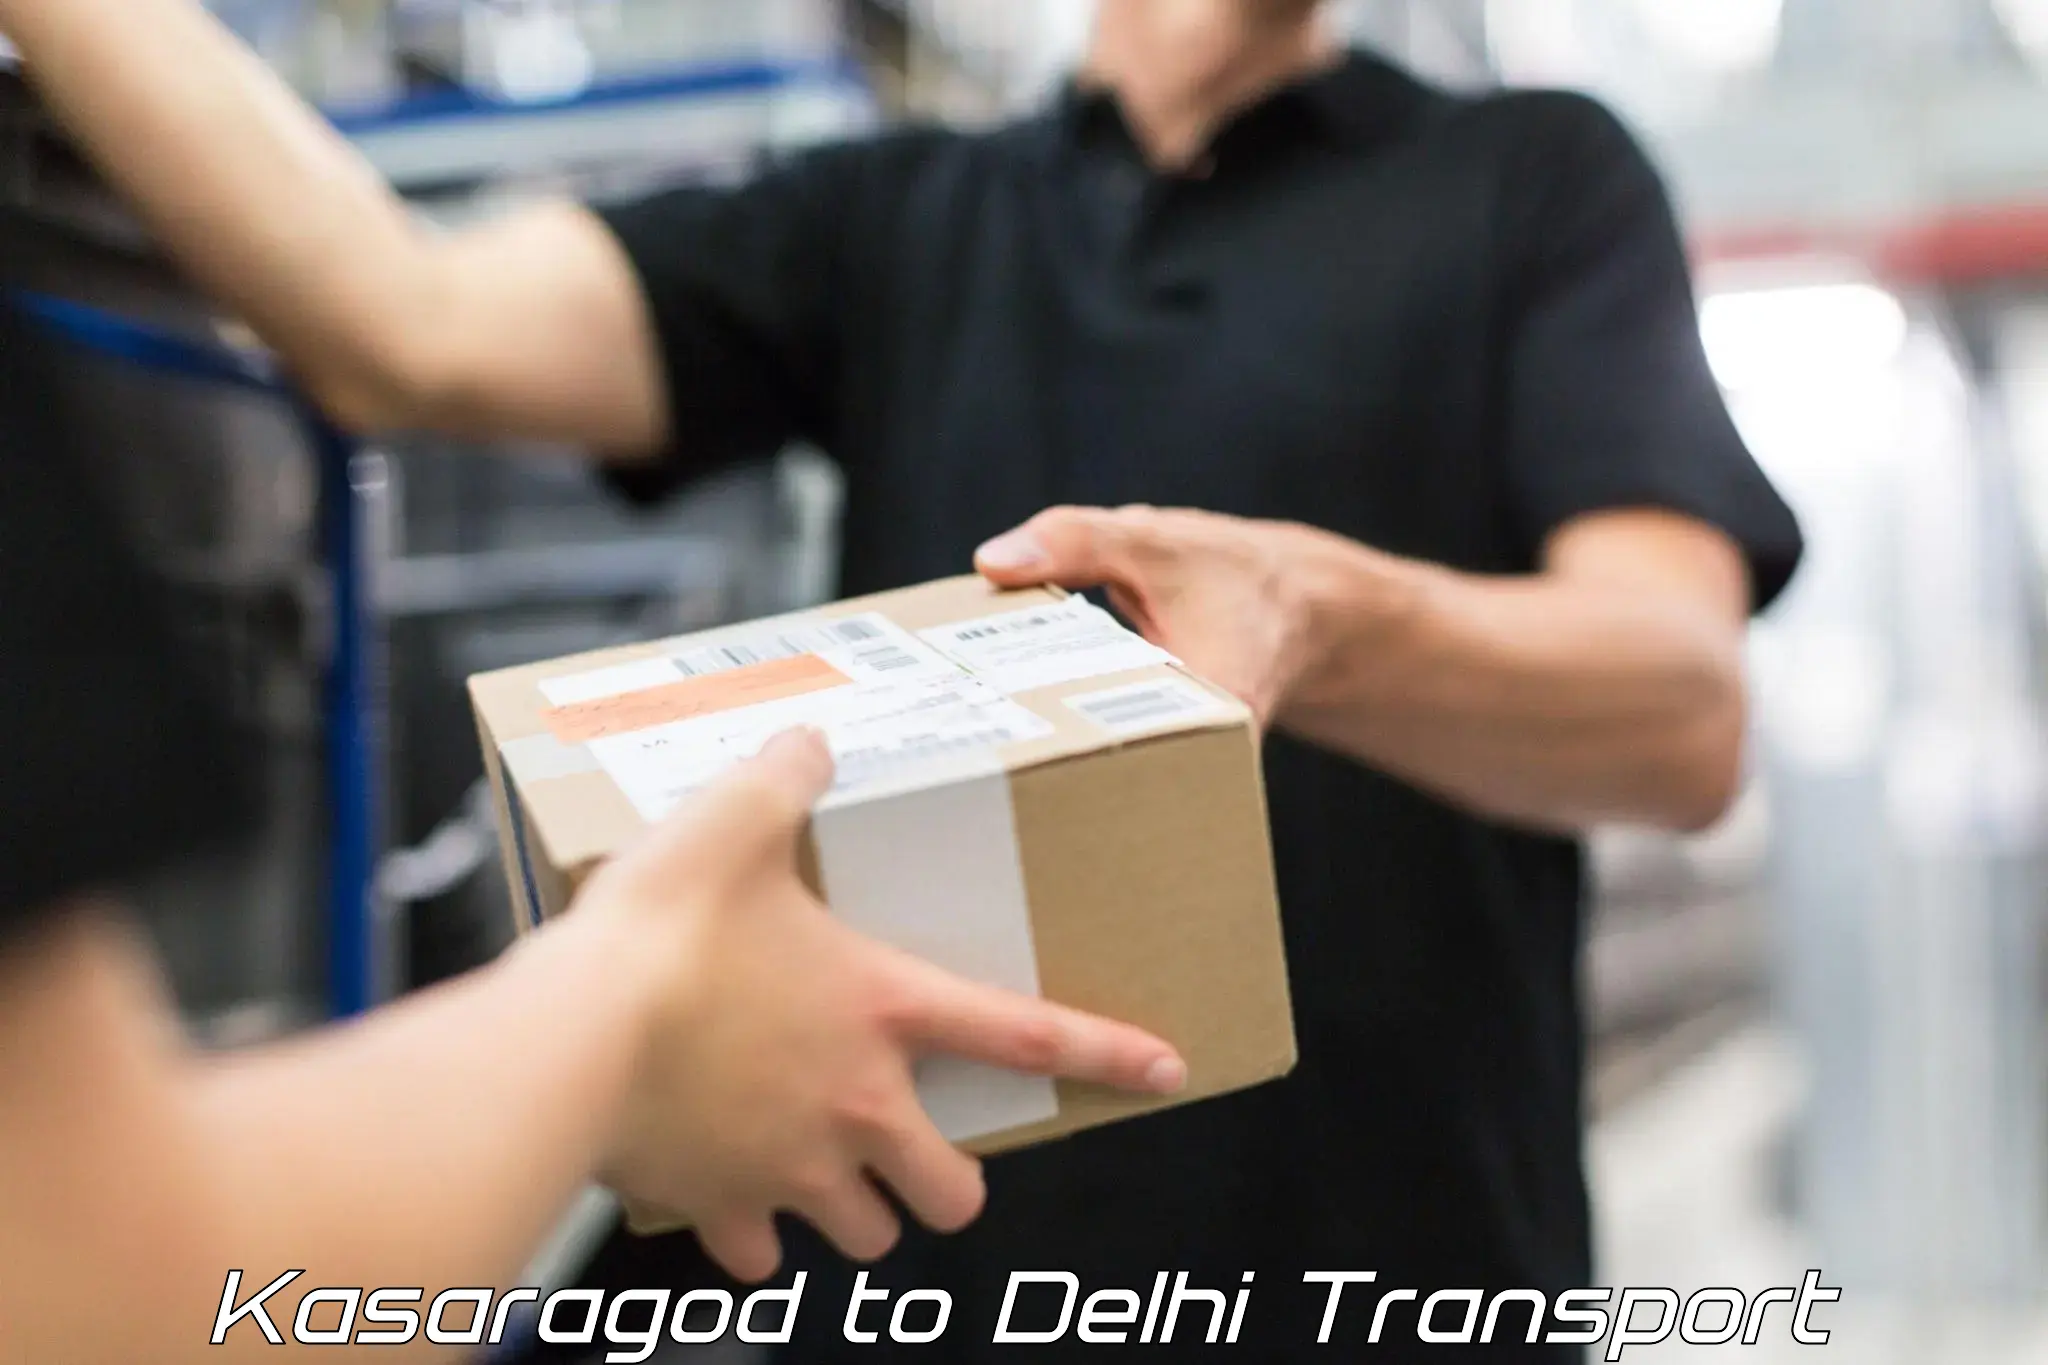 Road transport online services Kasaragod to NIT Delhi